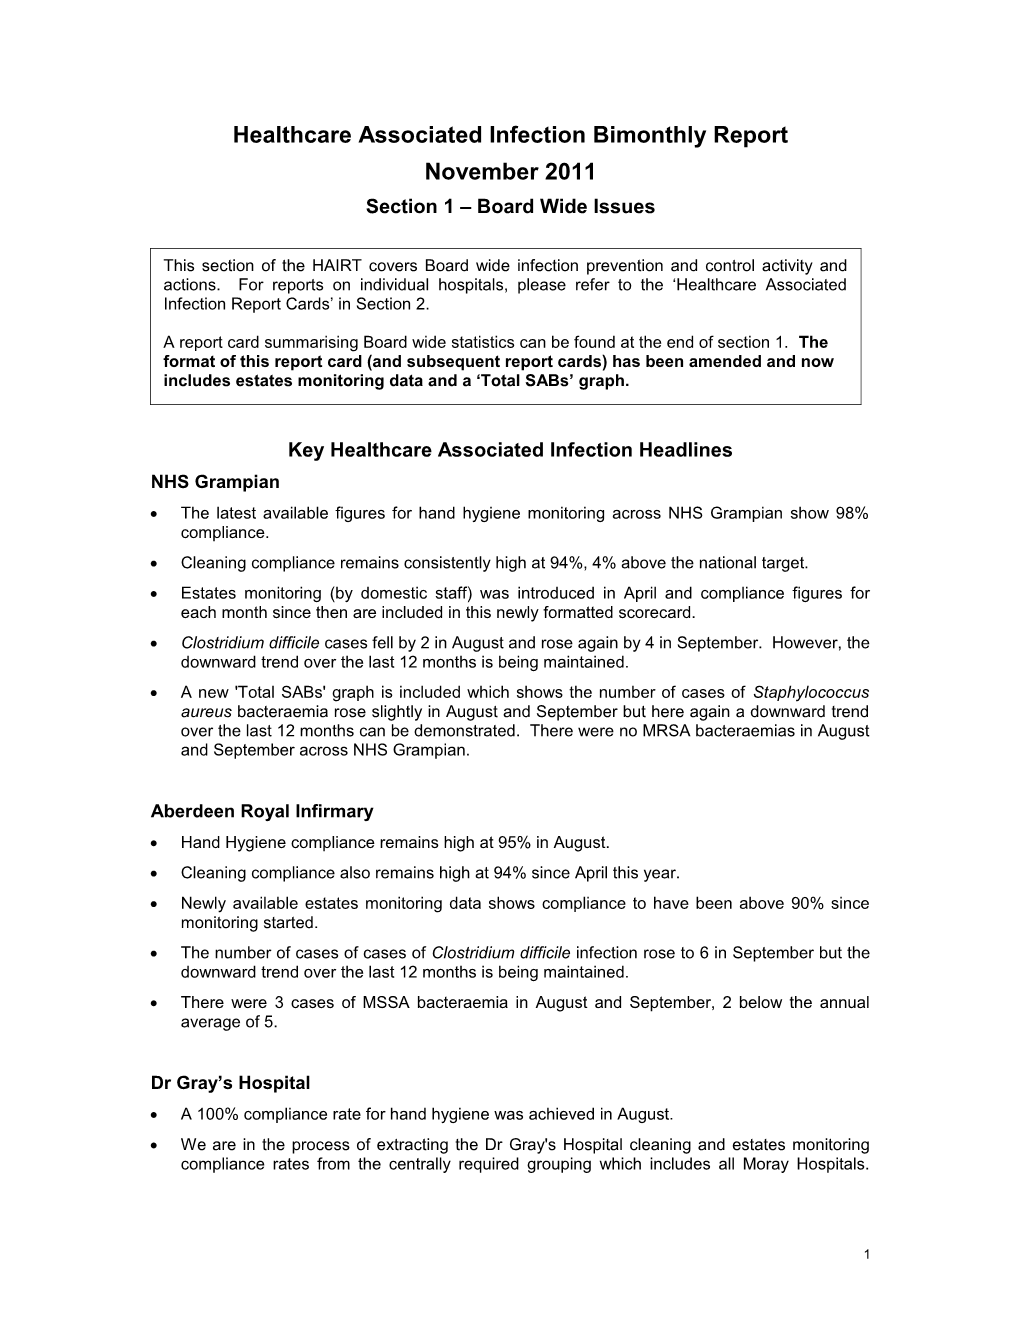 Item 7.2.2 for 6 Dec 2011 HAI Report